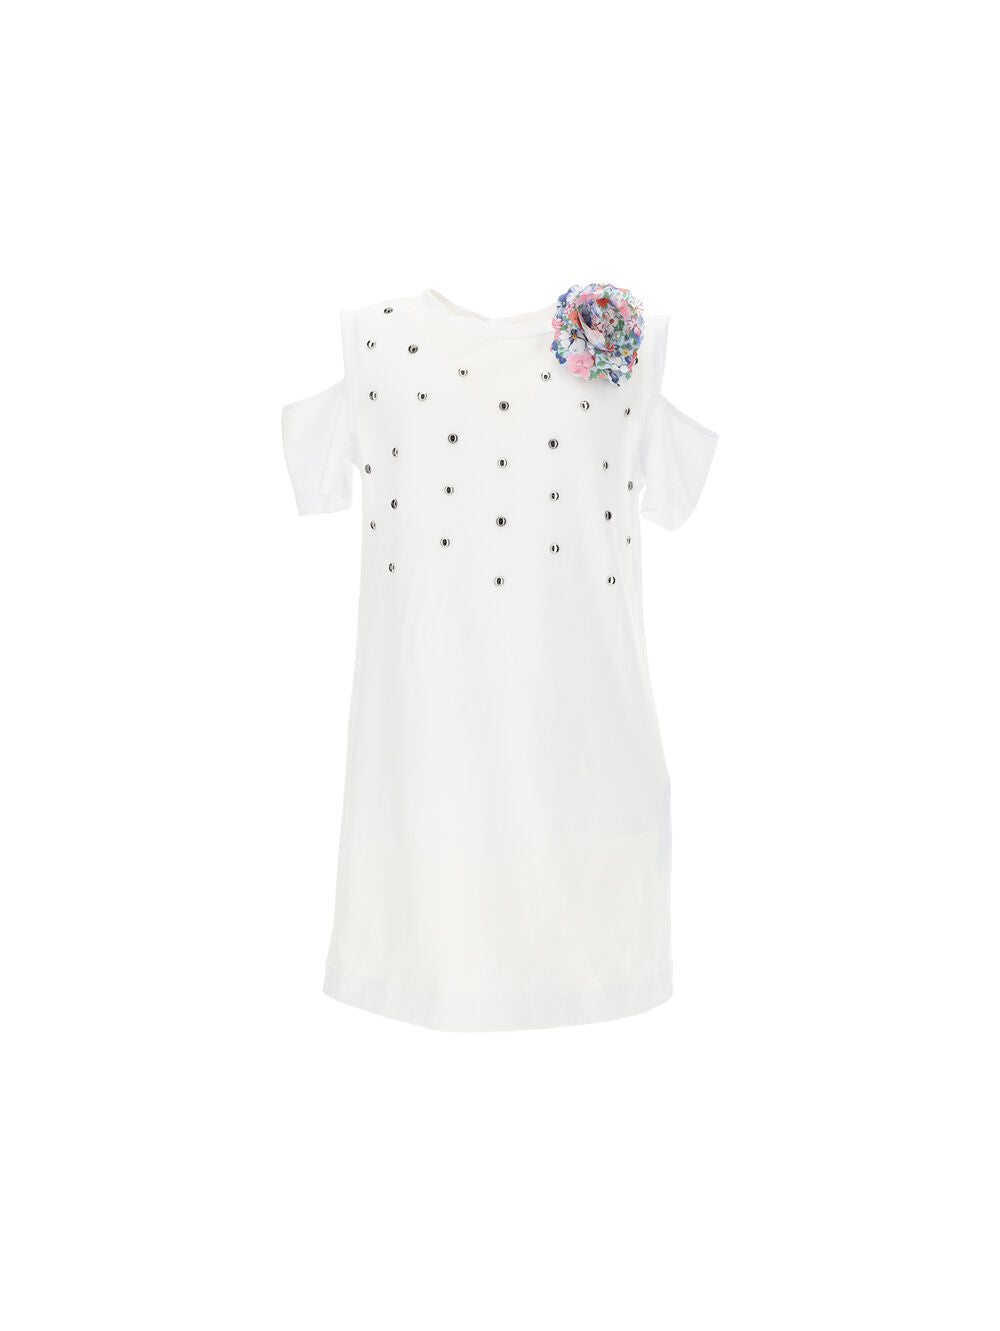 Monnalisa T-shirt Dress w/ Tulle Skirt_ Blue/White 419907-9201-9954